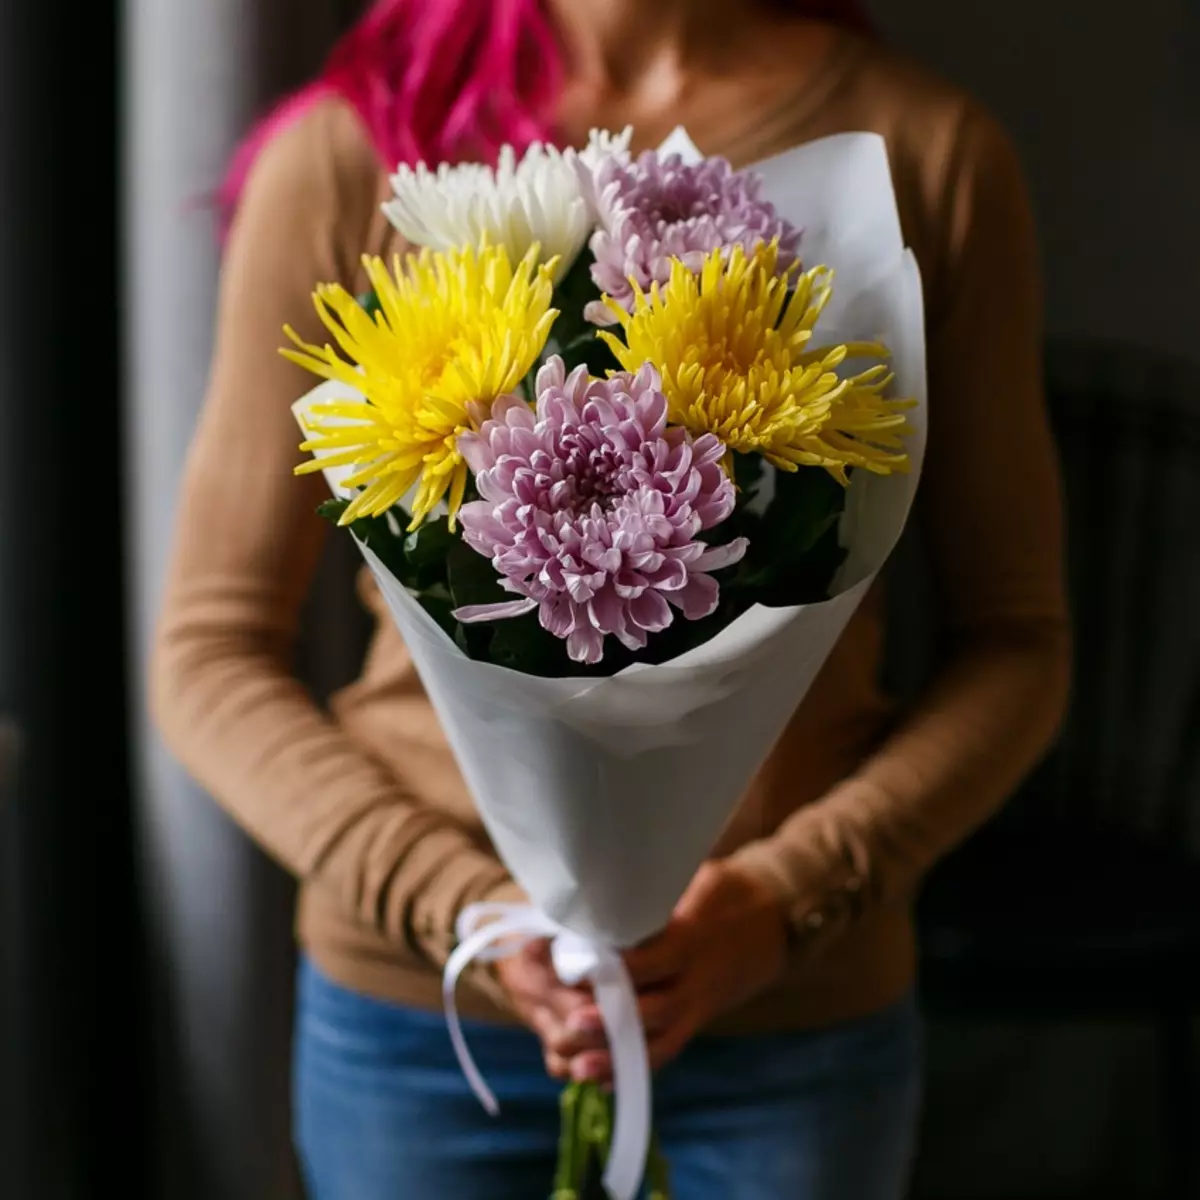 Blumen am 8. März: Was geben Mädchen und Frauen? Was ist besser, meiner Frau zu geben? Was wird normalerweise verkauft? Warum ist es möglich, Tulpen zu geben? 18190_20